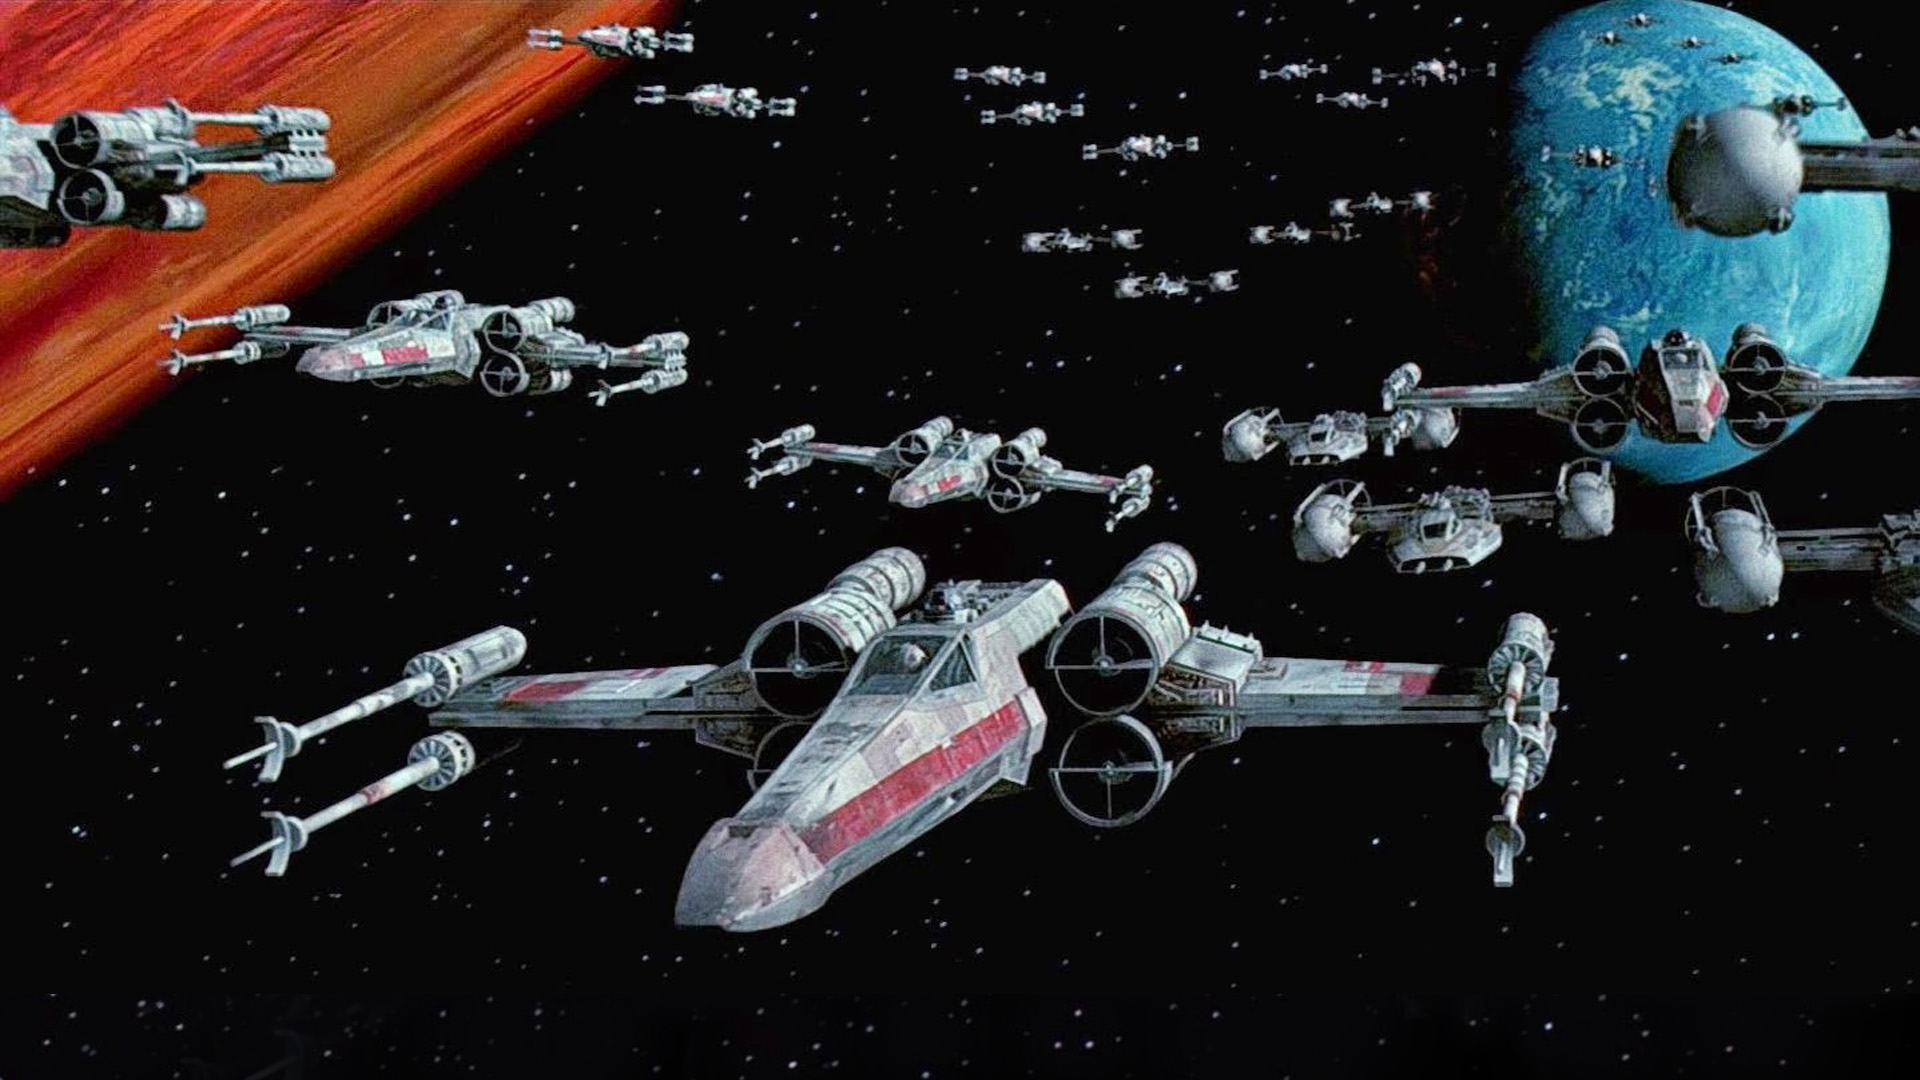 Star Wars Fleet Of Combat Aircraft With X Wings Scenarios